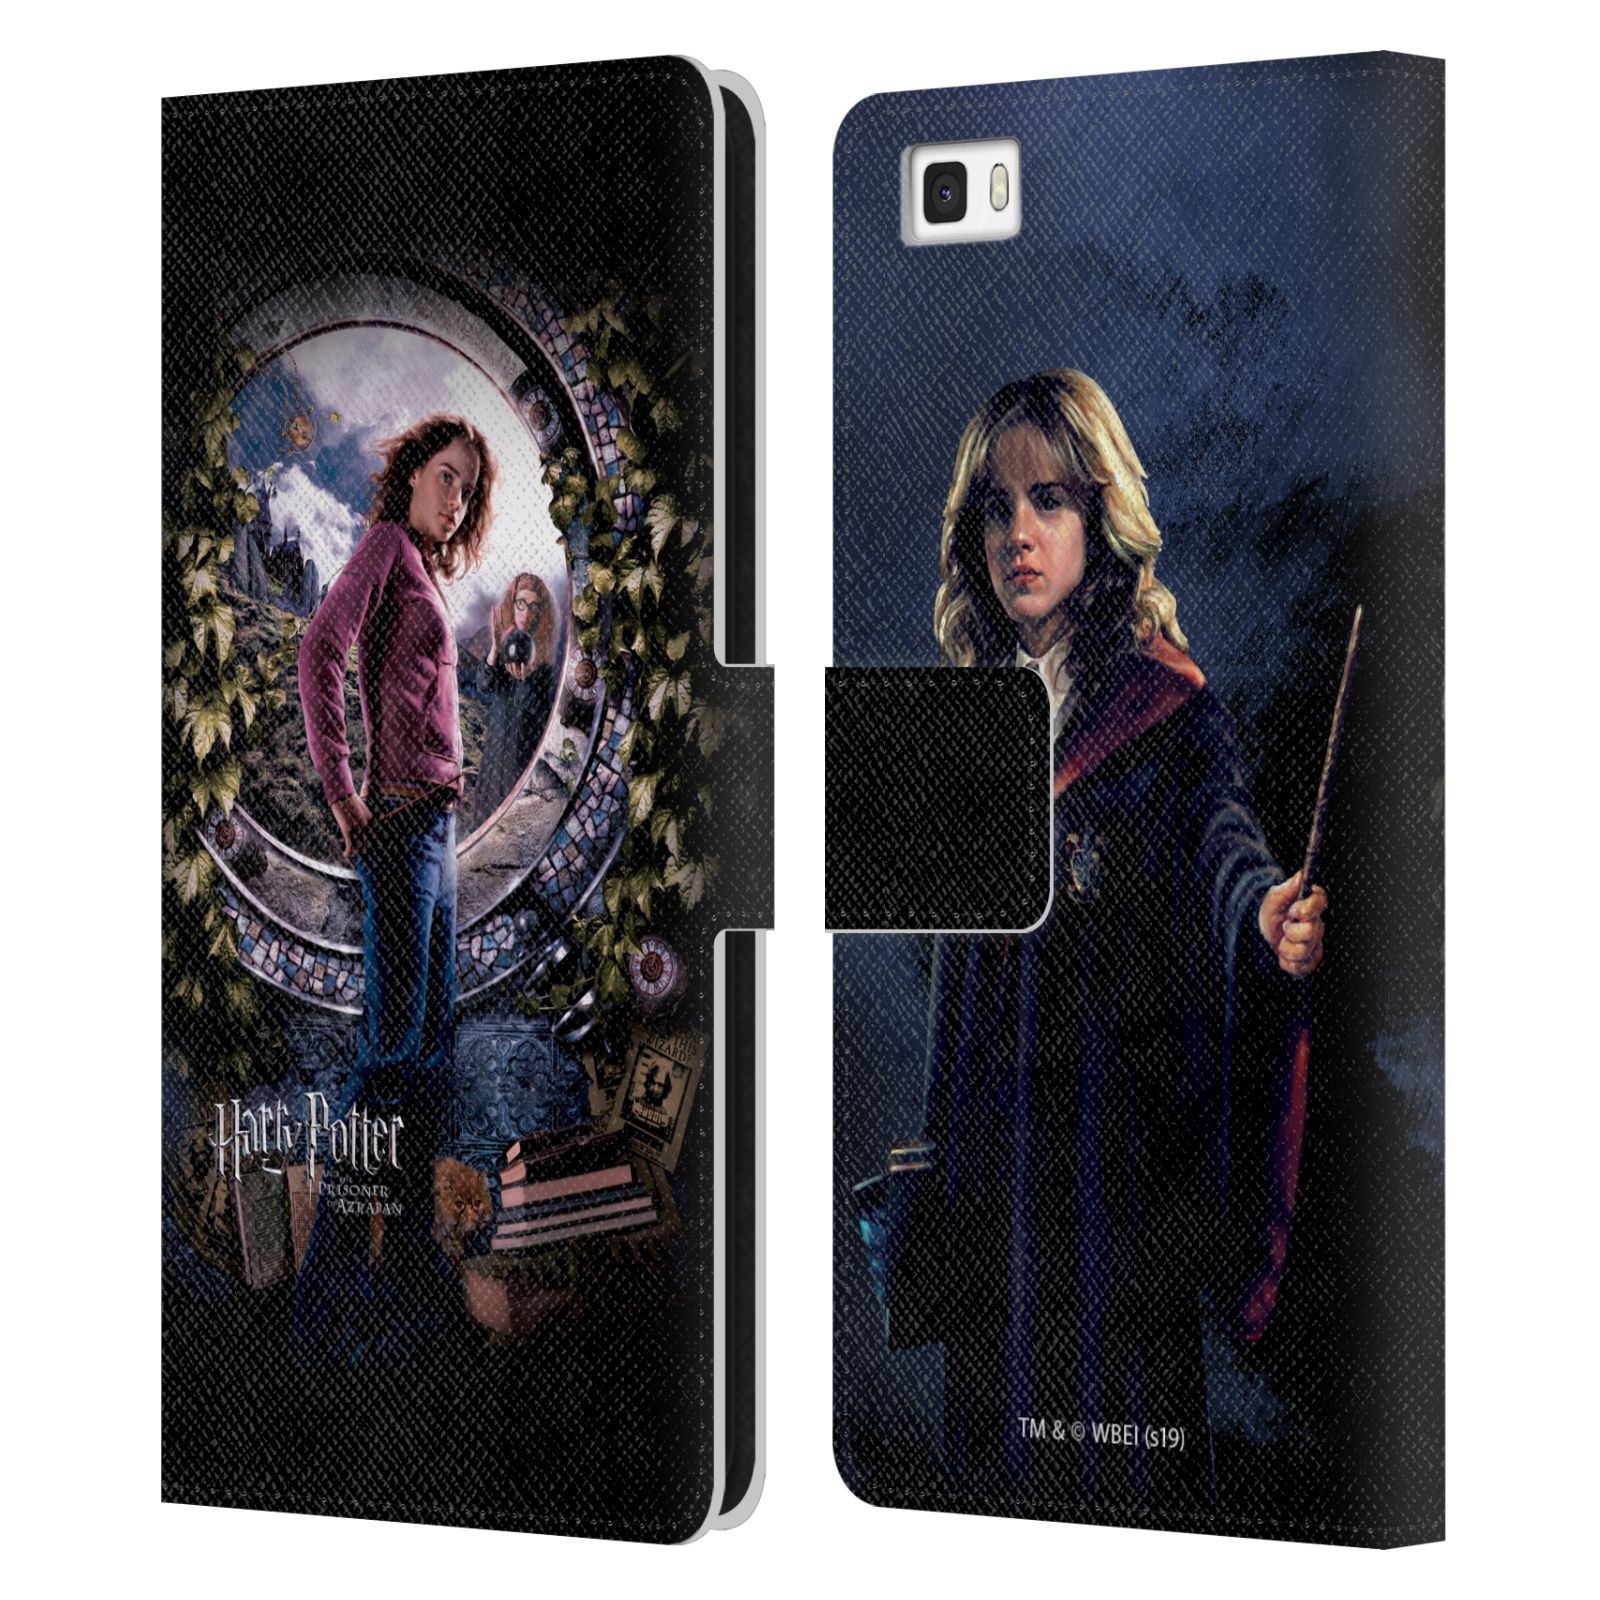 Pouzdro na mobil Huawei P8 LITE - HEAD CASE - Harry Potter - Vězeň z Azkabanu - Hermiona